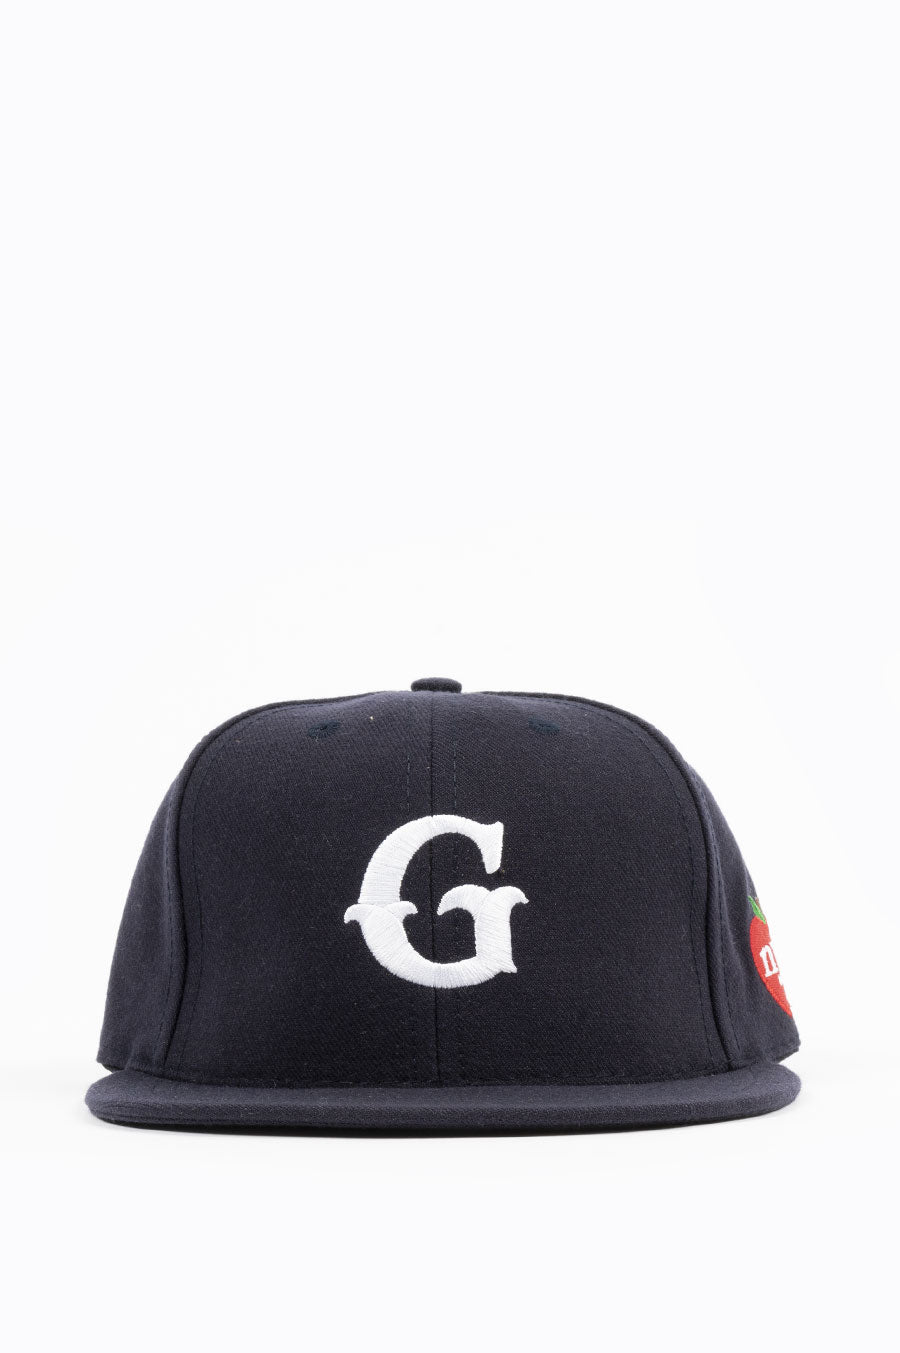 GARDENS & SEEDS G CAP NYC NAVY – BLENDS